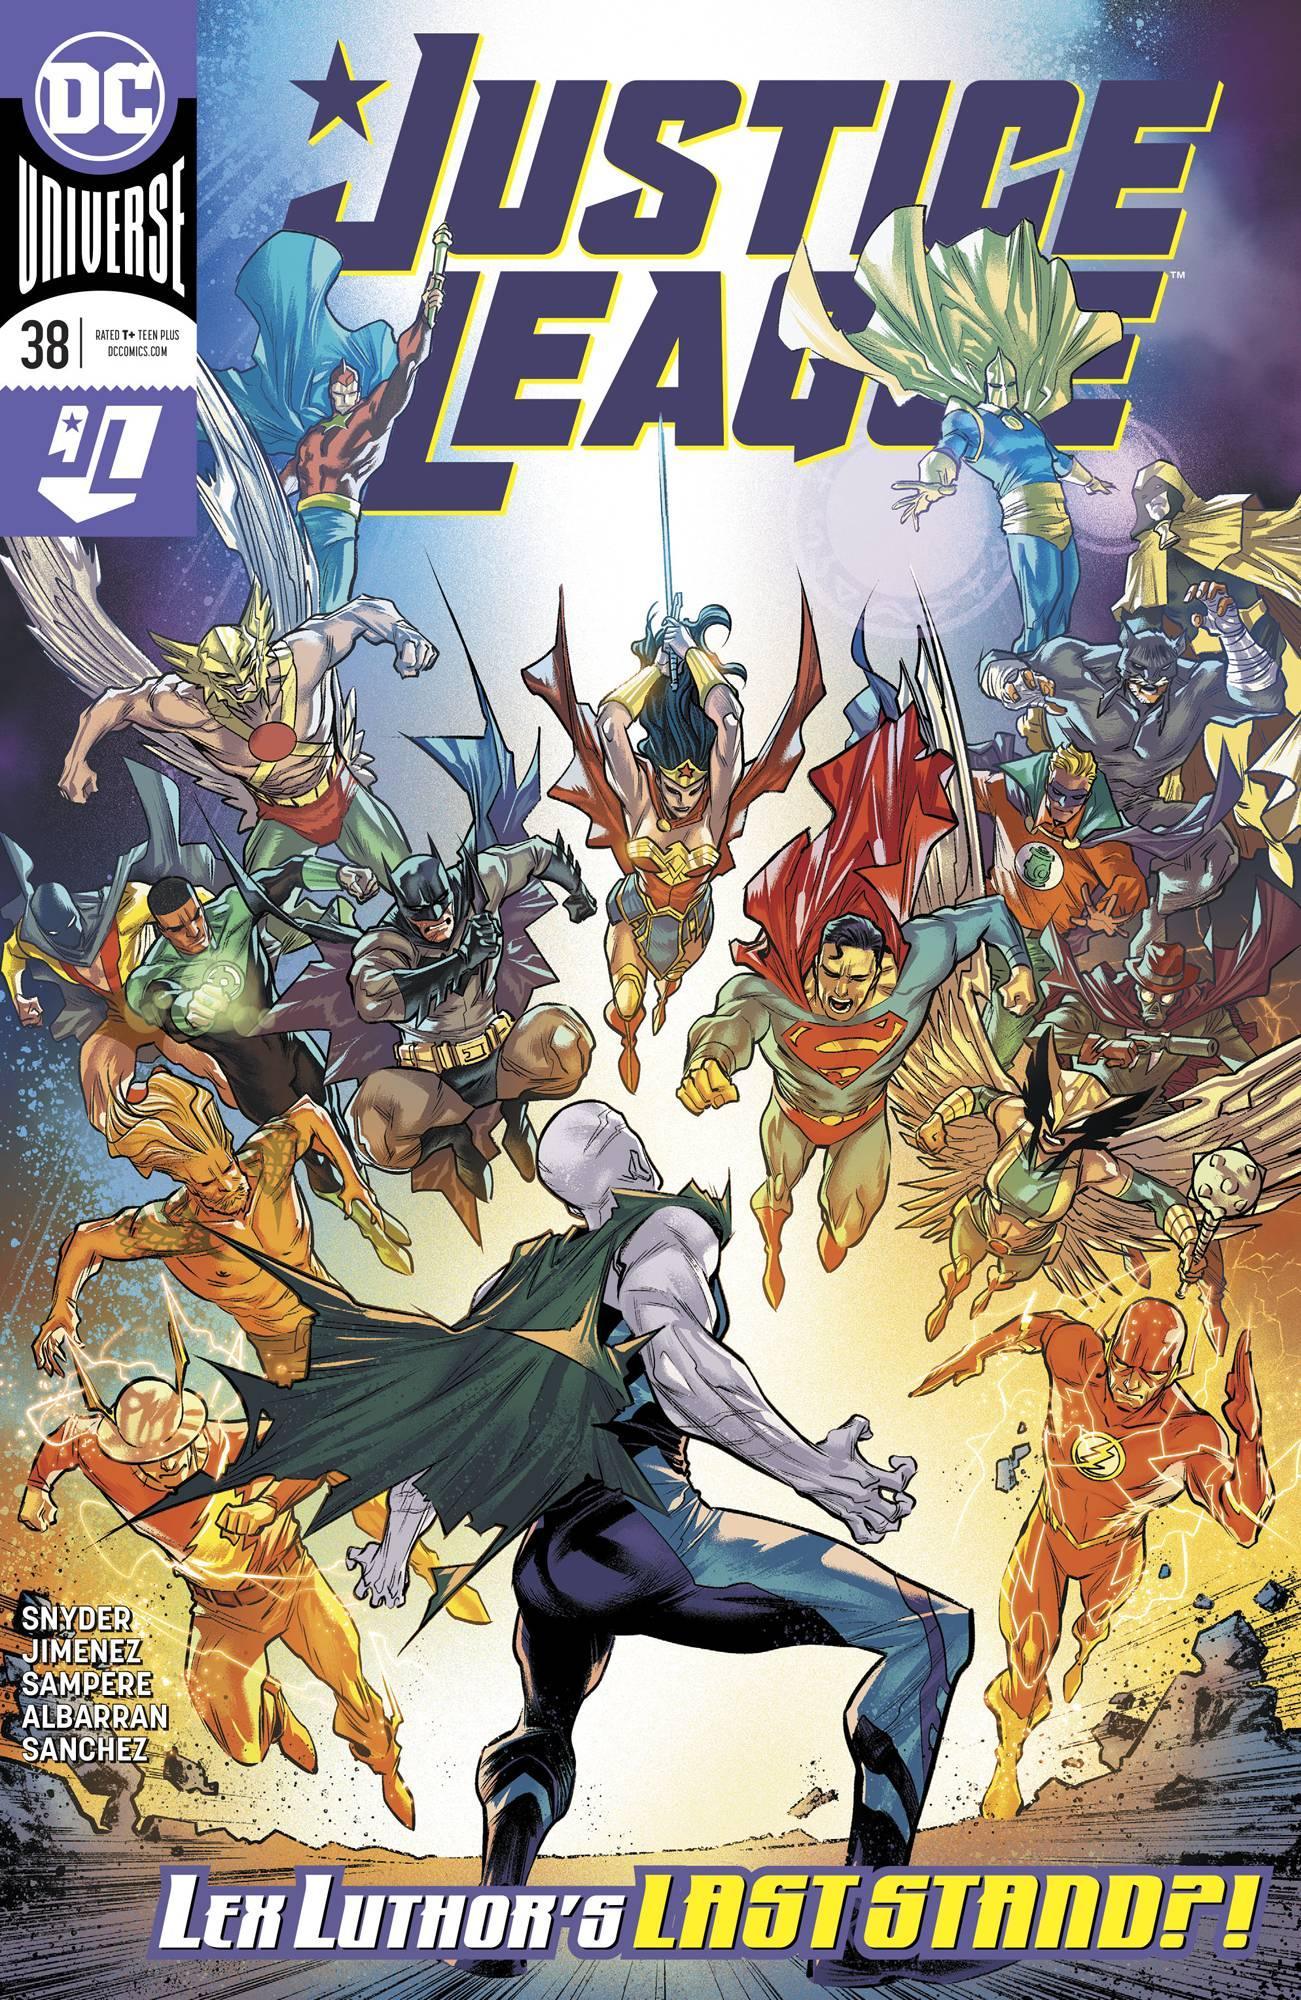 JUSTICE LEAGUE VOL 4 #38 - Kings Comics